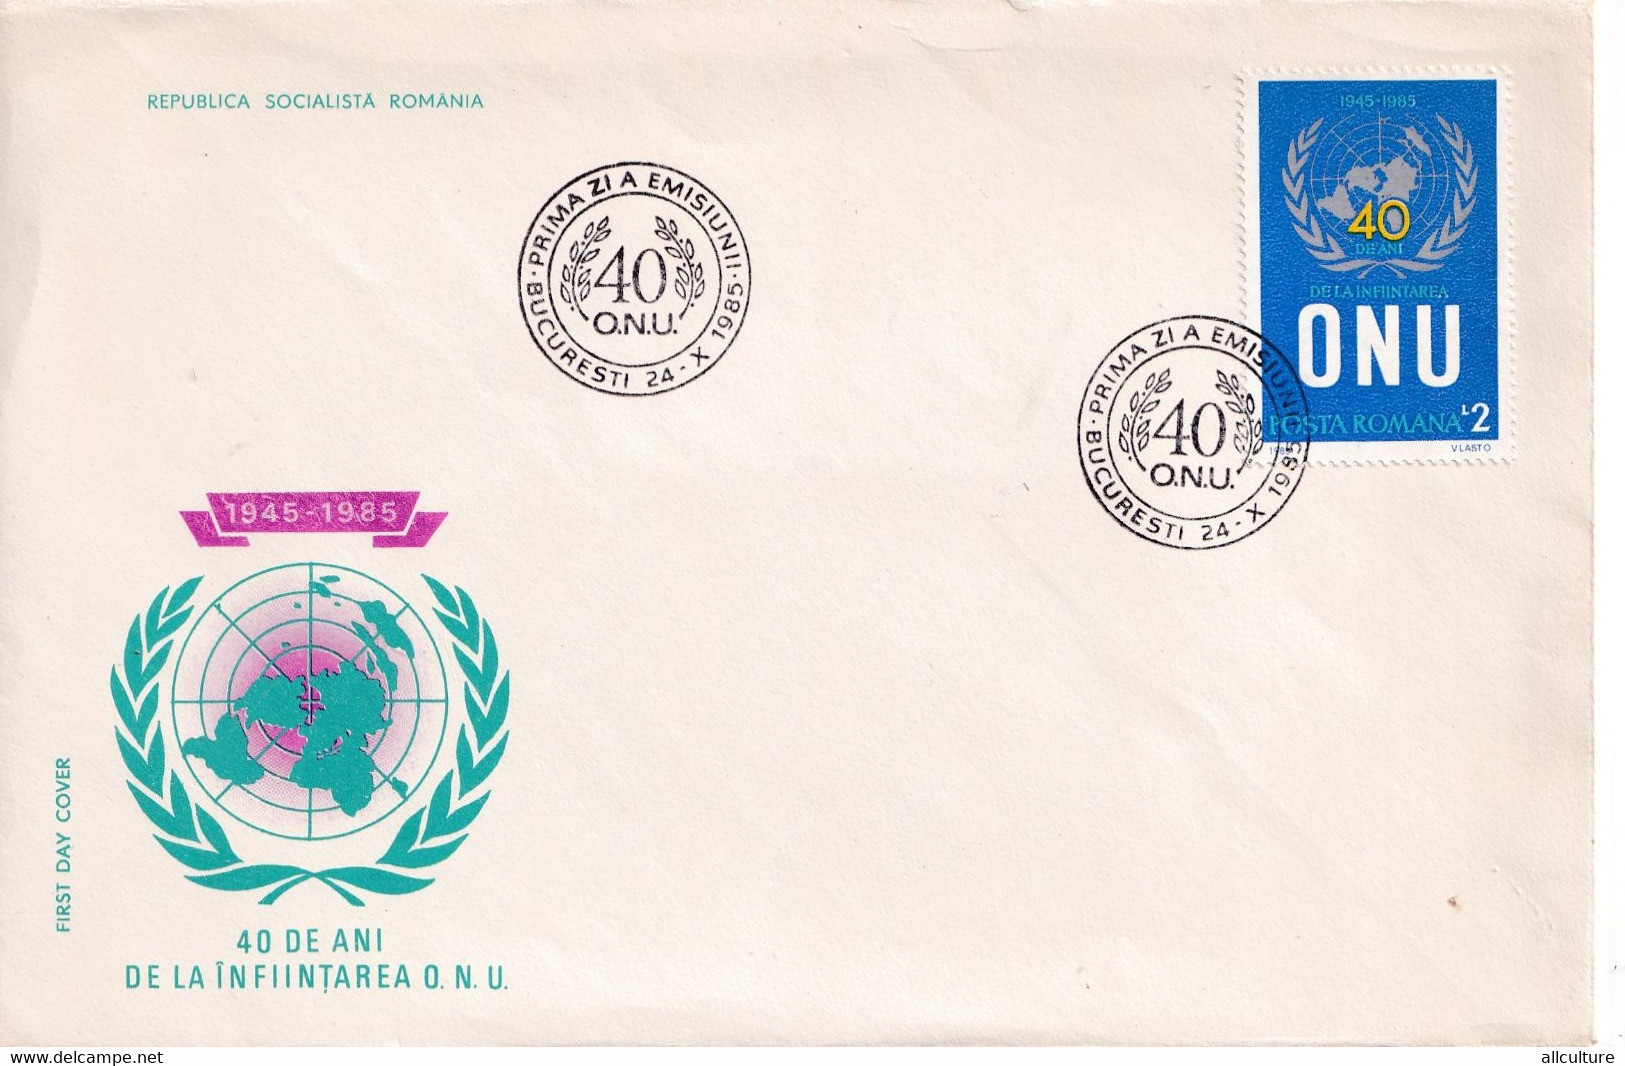 A2719 - 40 Ani De La Infiintarea O.N.U 1945-1985 , Bucuresti 1985 Republica Socialista Romania FDC - UNO